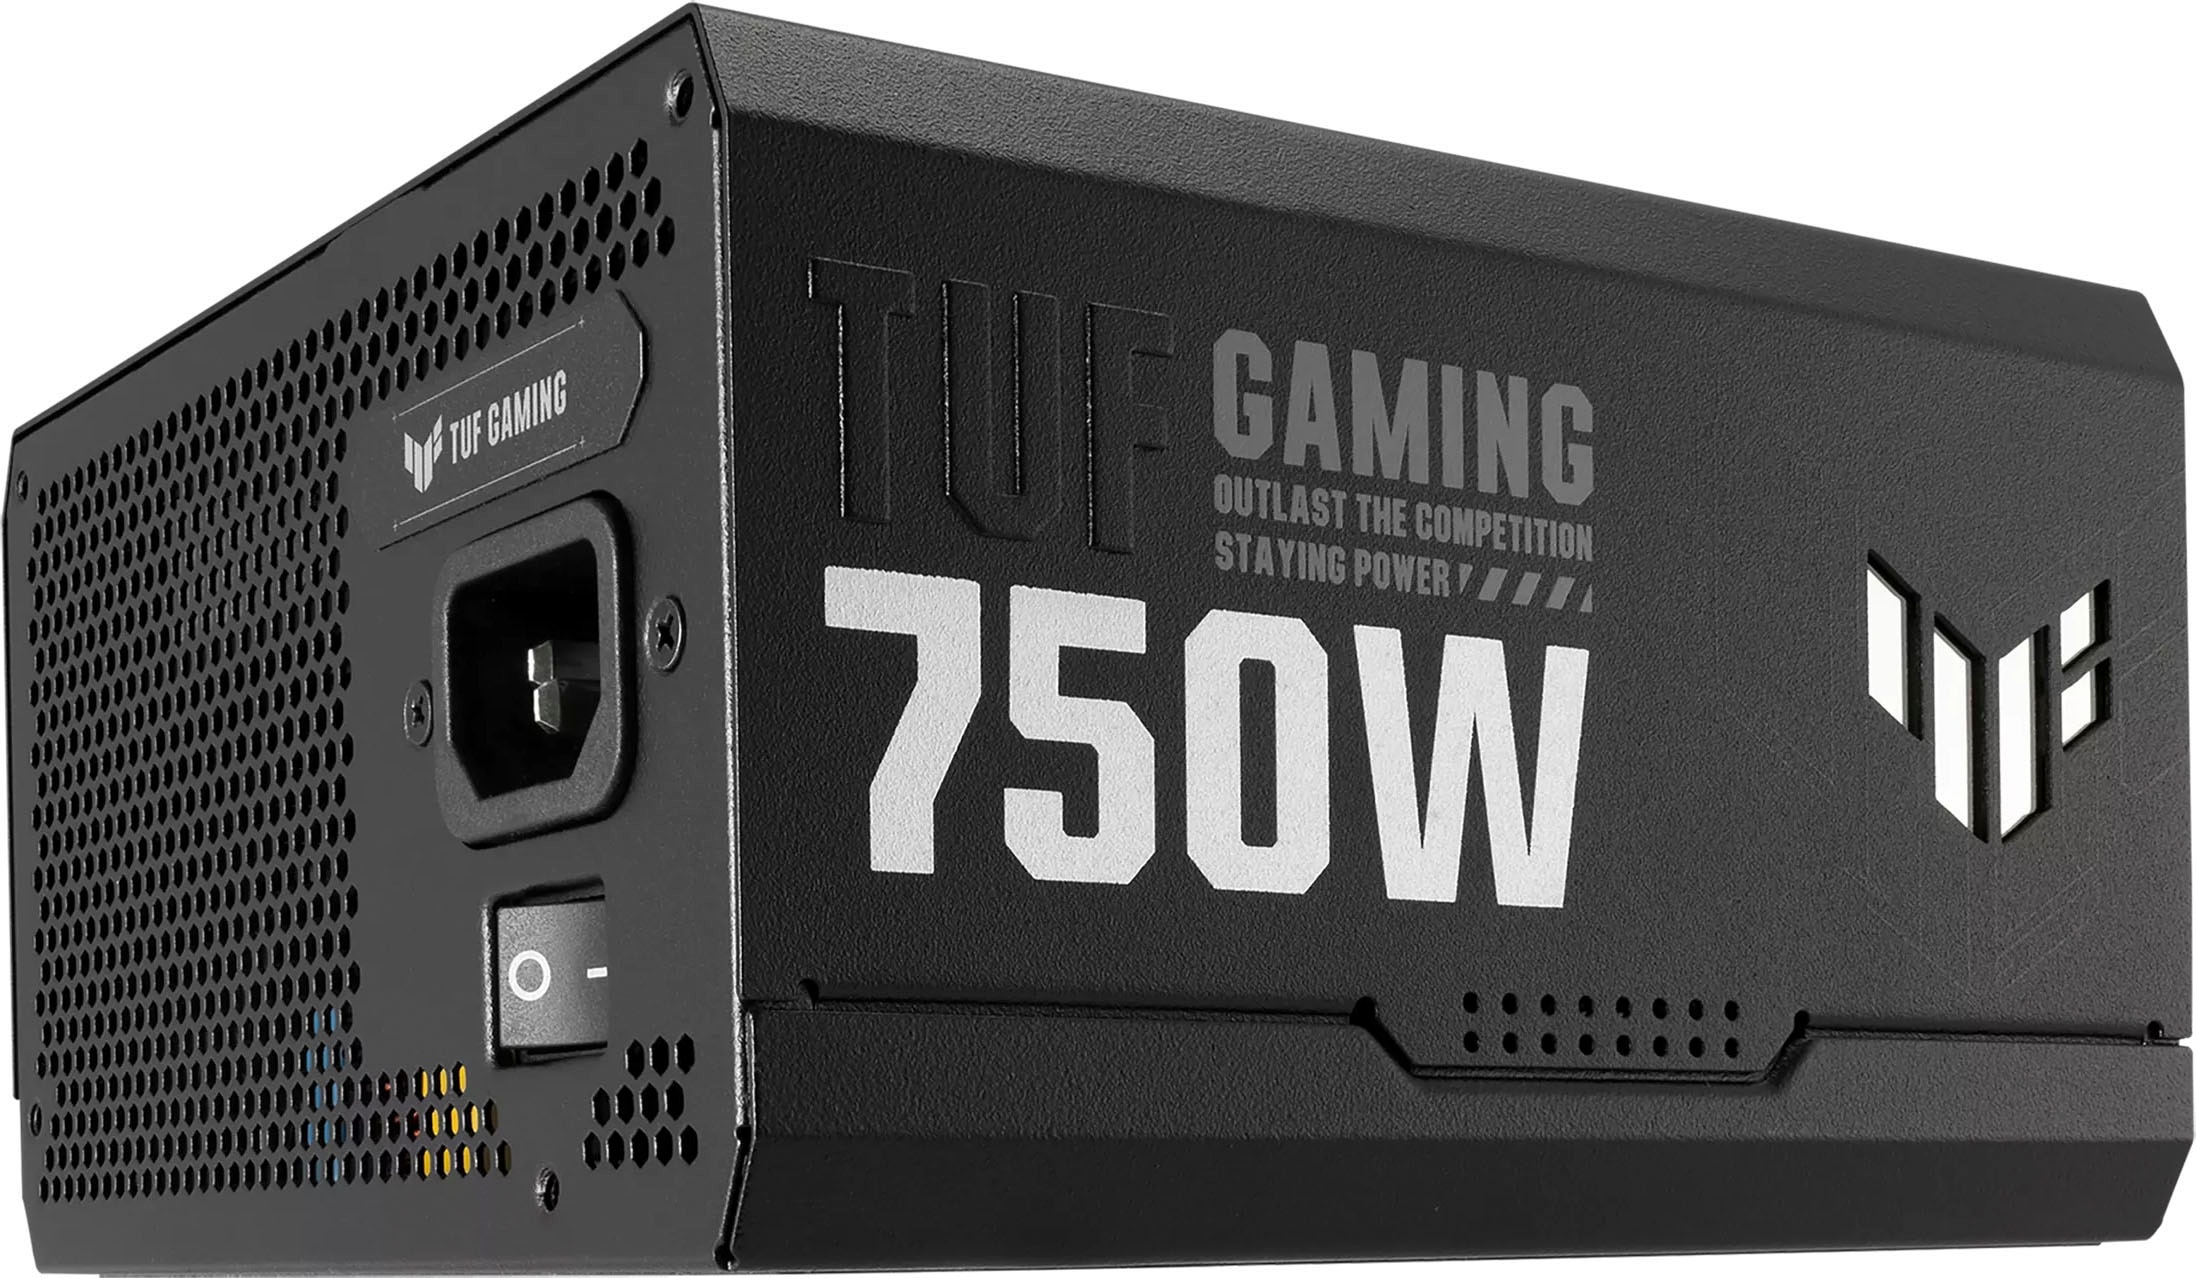 Asus PC-Netzteil »TUF Gaming 750W Gold«